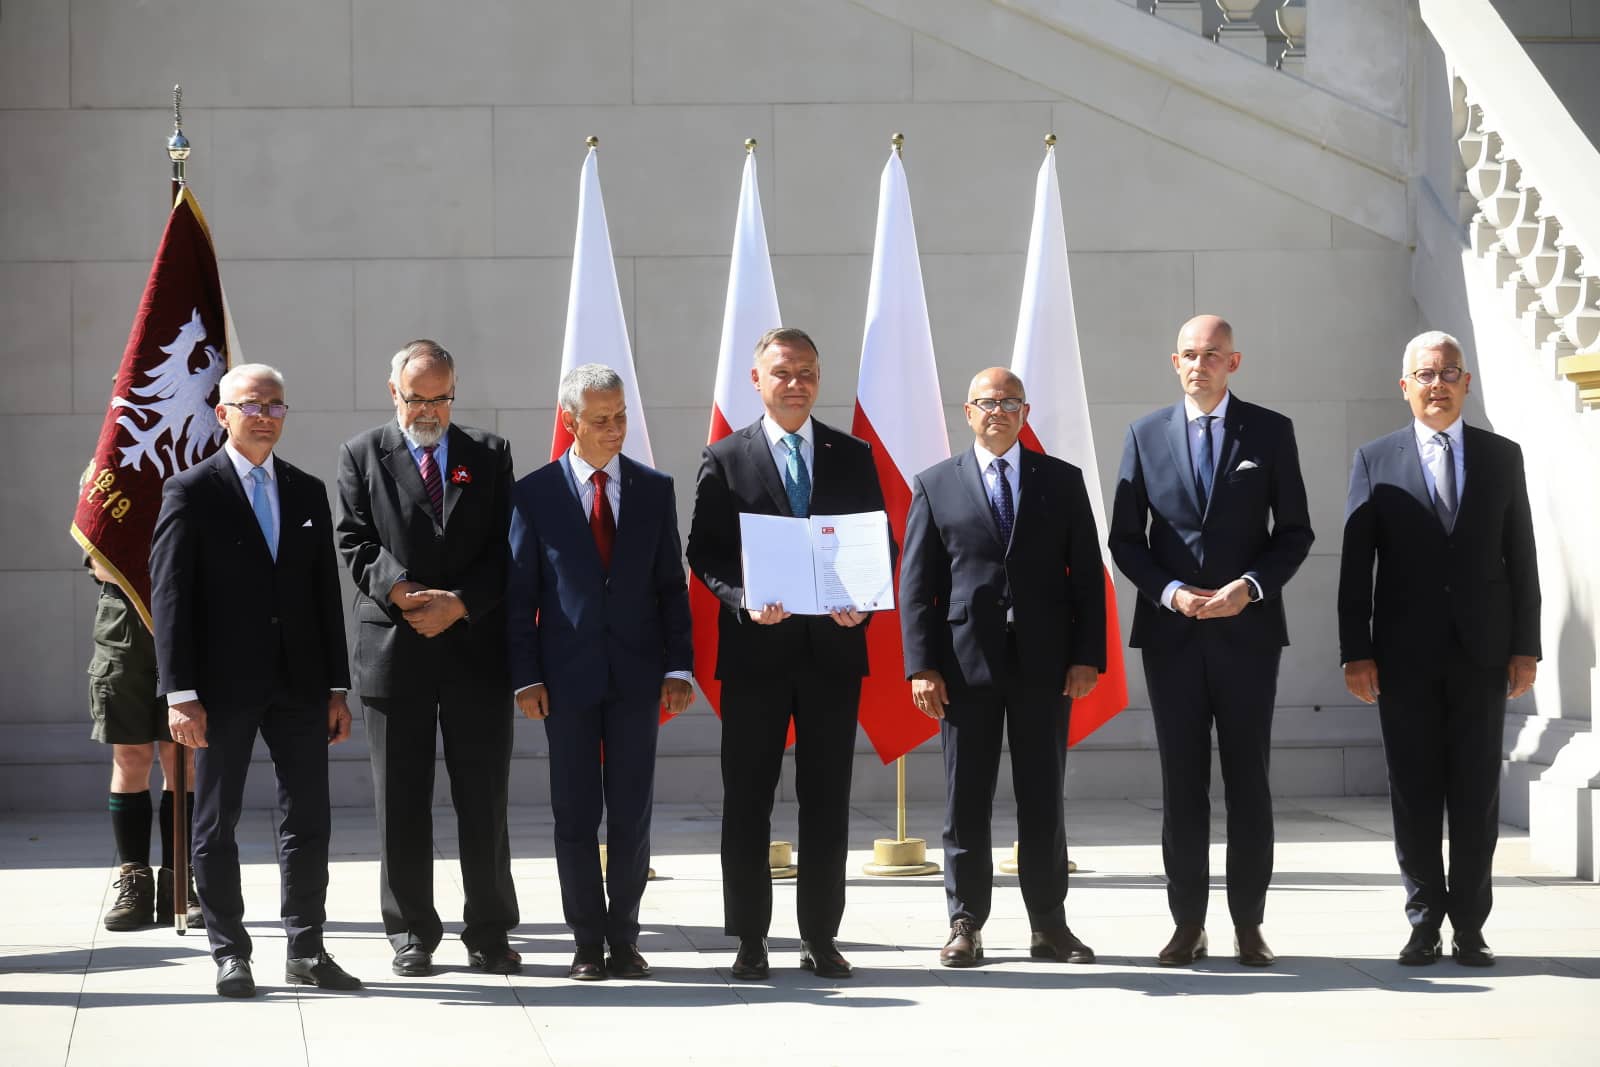 Prezydent Andrzej Duda wspiera inicjatywę święta państwaowego Zwycięskiego Powstania Wielkopolskiego